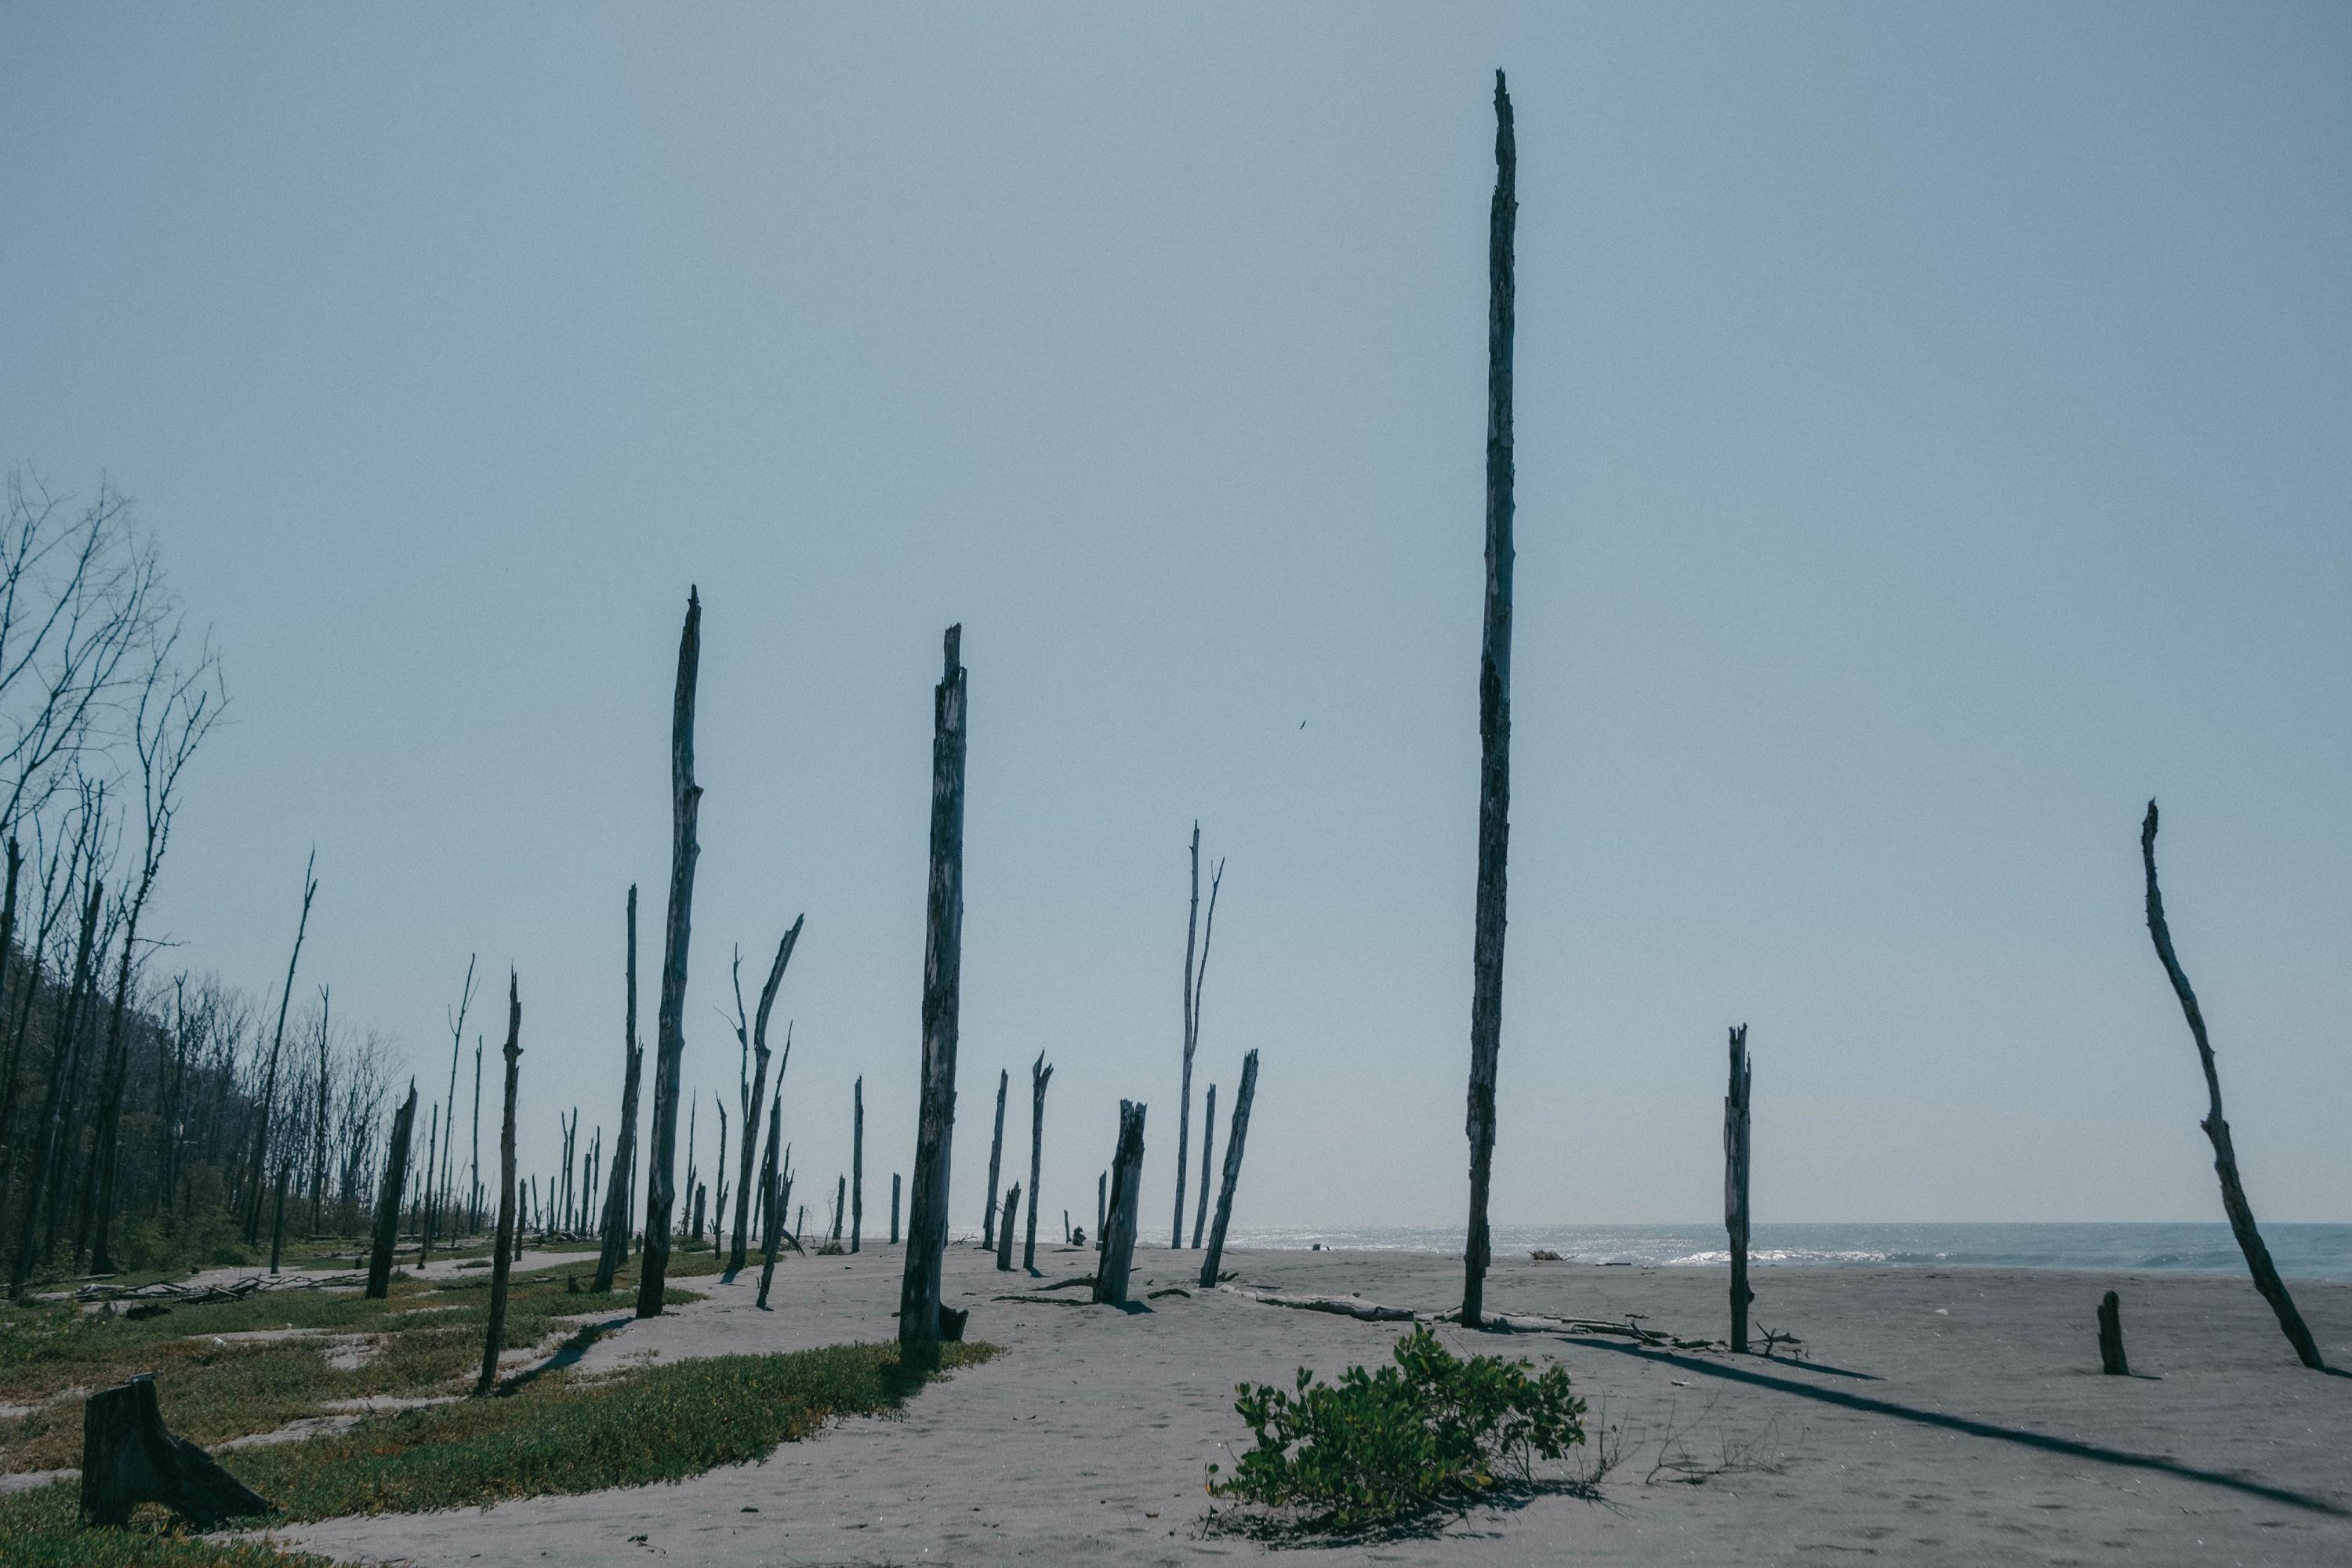 En la playa, donde hace más de una década había lodo y bosque, todavía permanecen erguidos centenares de troncos secos del árbol Mangle Rojo Espigado. El manglar se extendía por la playa hasta donde ahora llega el agua del mar. En esa área, según los lugareños, habitaba la Lora Nuca Amarilla y los nidos tuvieron que desplazarse y es difícil encontrarles en la zona. Este sector pertenece al segundo complejo Bahía de Jiquilisco, designado para ser protegido por El Salvador en el 2005 como sitio Ramsar por su importancia a nivel mundial y su capacidad de albergar decenas de especies de aves y otras especies.